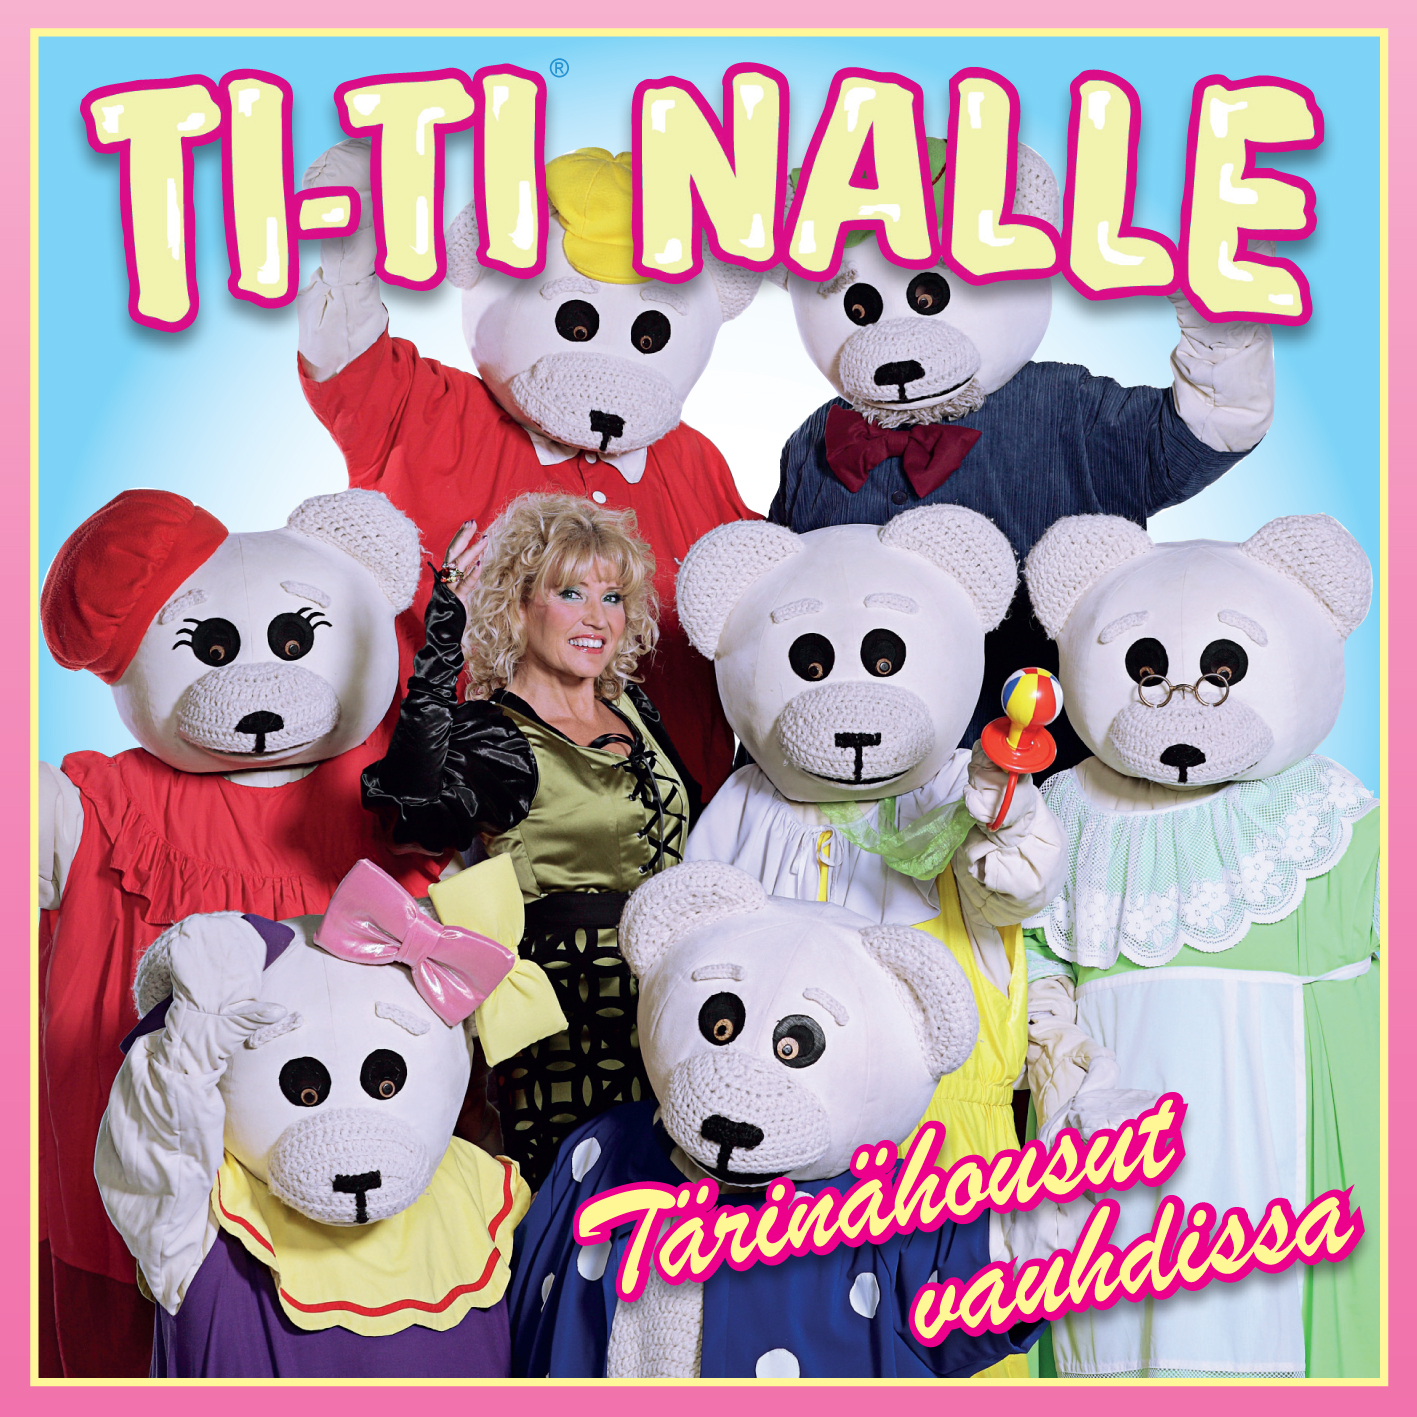 Ti-Ti Nalle - T rin housut Vauhdissa - CD